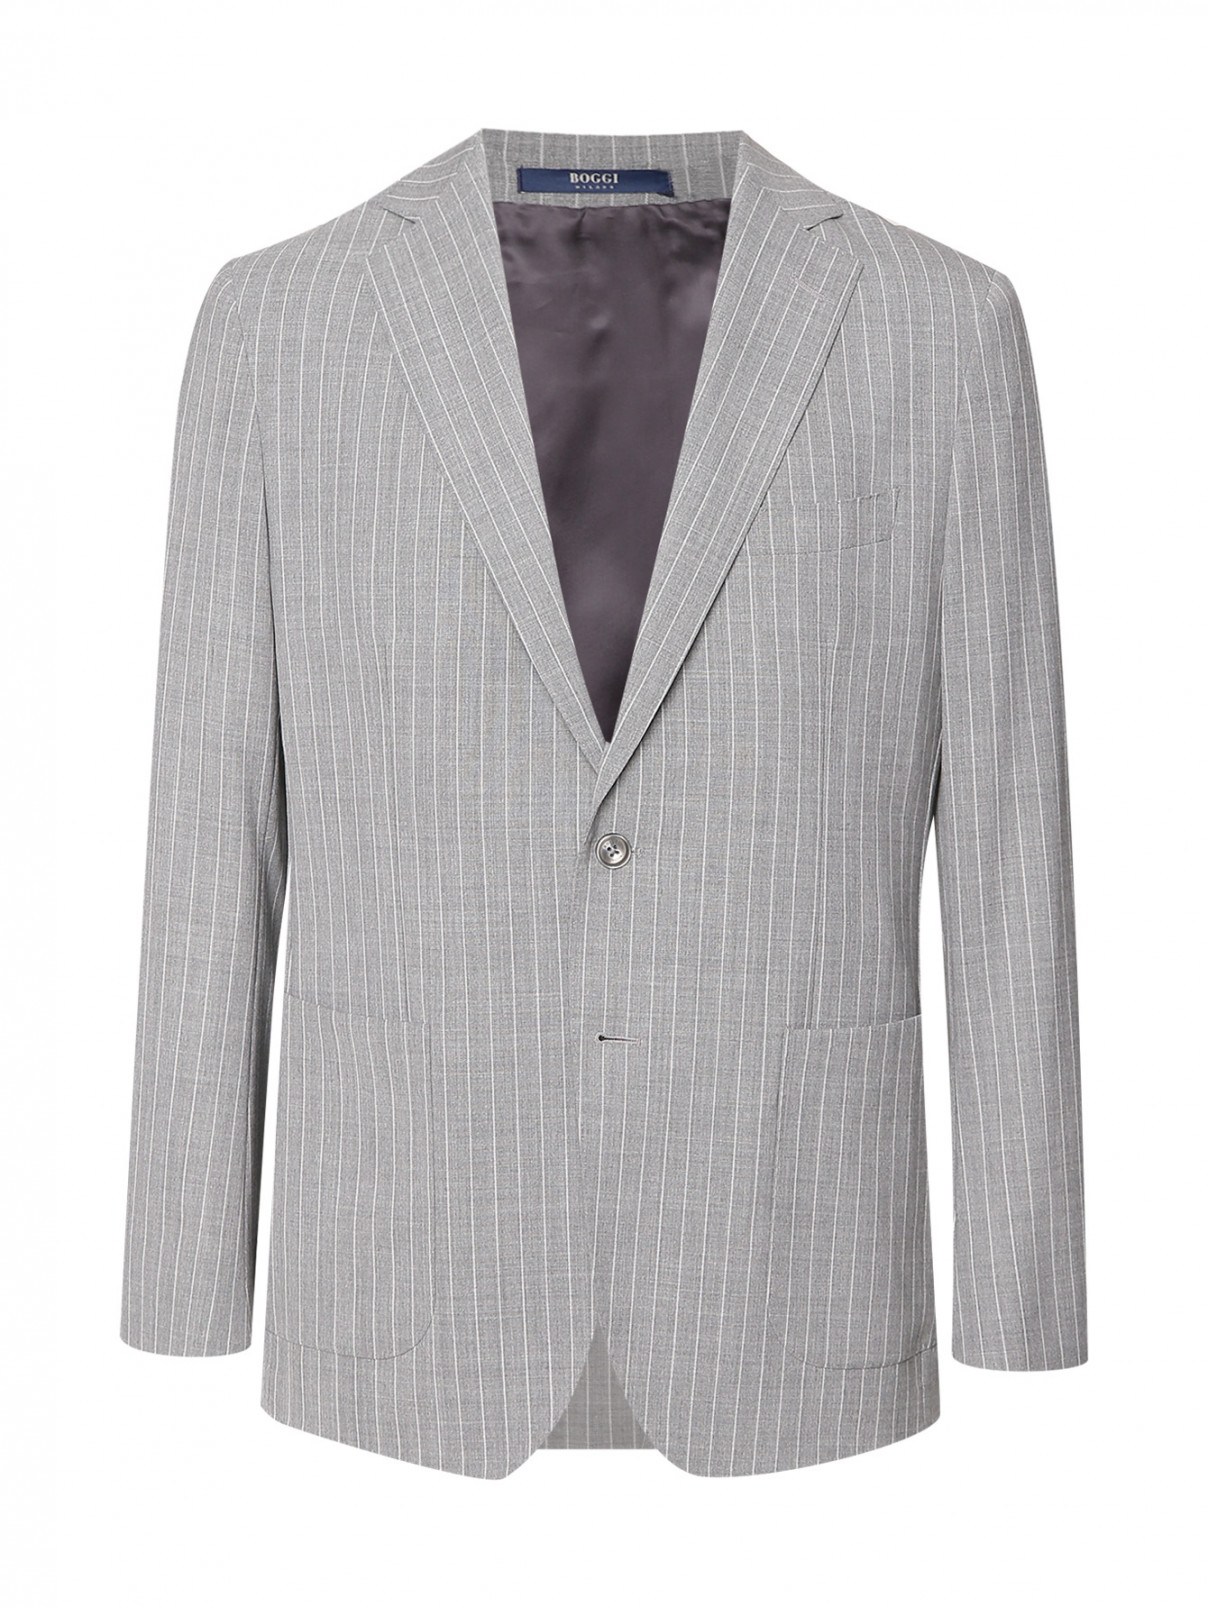 Пиджак из шерсти с узором полоска Boggi  –  Общий вид  – Цвет:  Серый